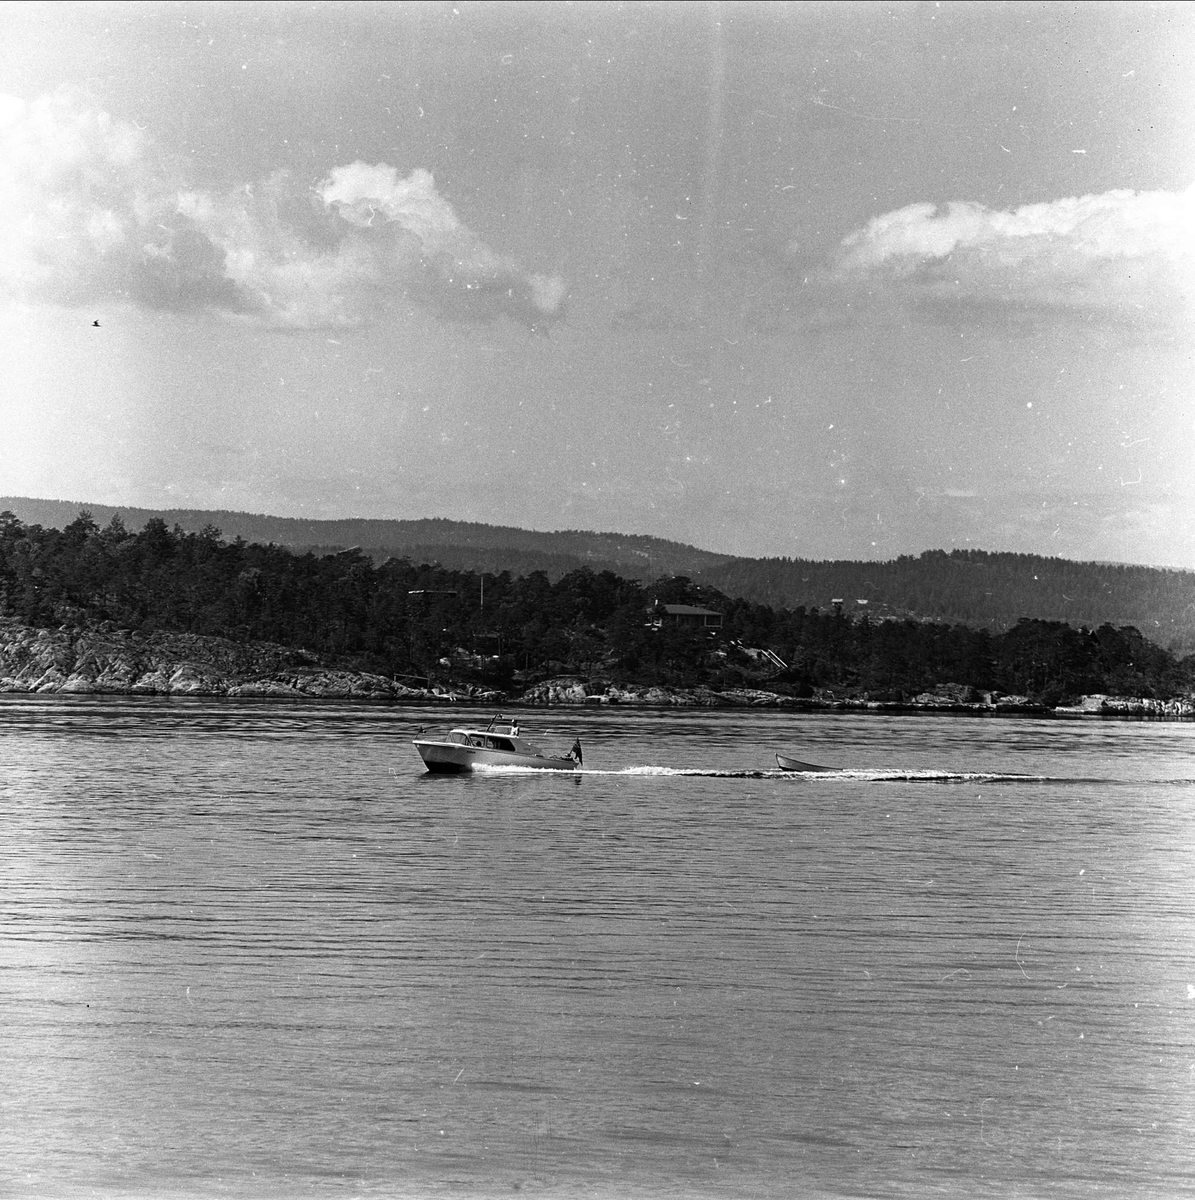 Nesodden, Akershus, 17.06.1961. Motorbåt med jolle på slep på sjøen.